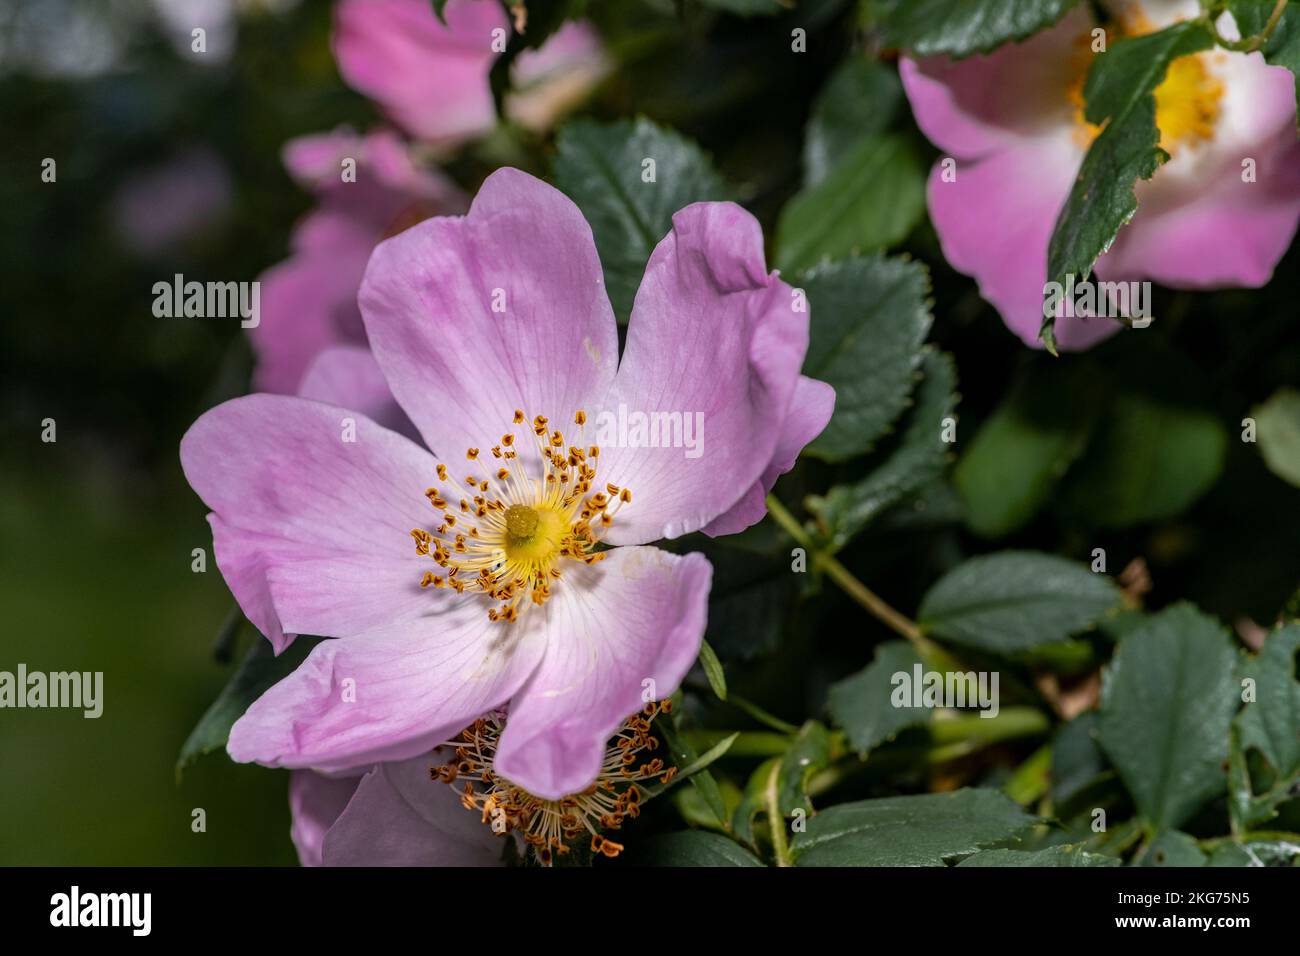 wild rose, macro flower photo, night flower shot Stock Photo